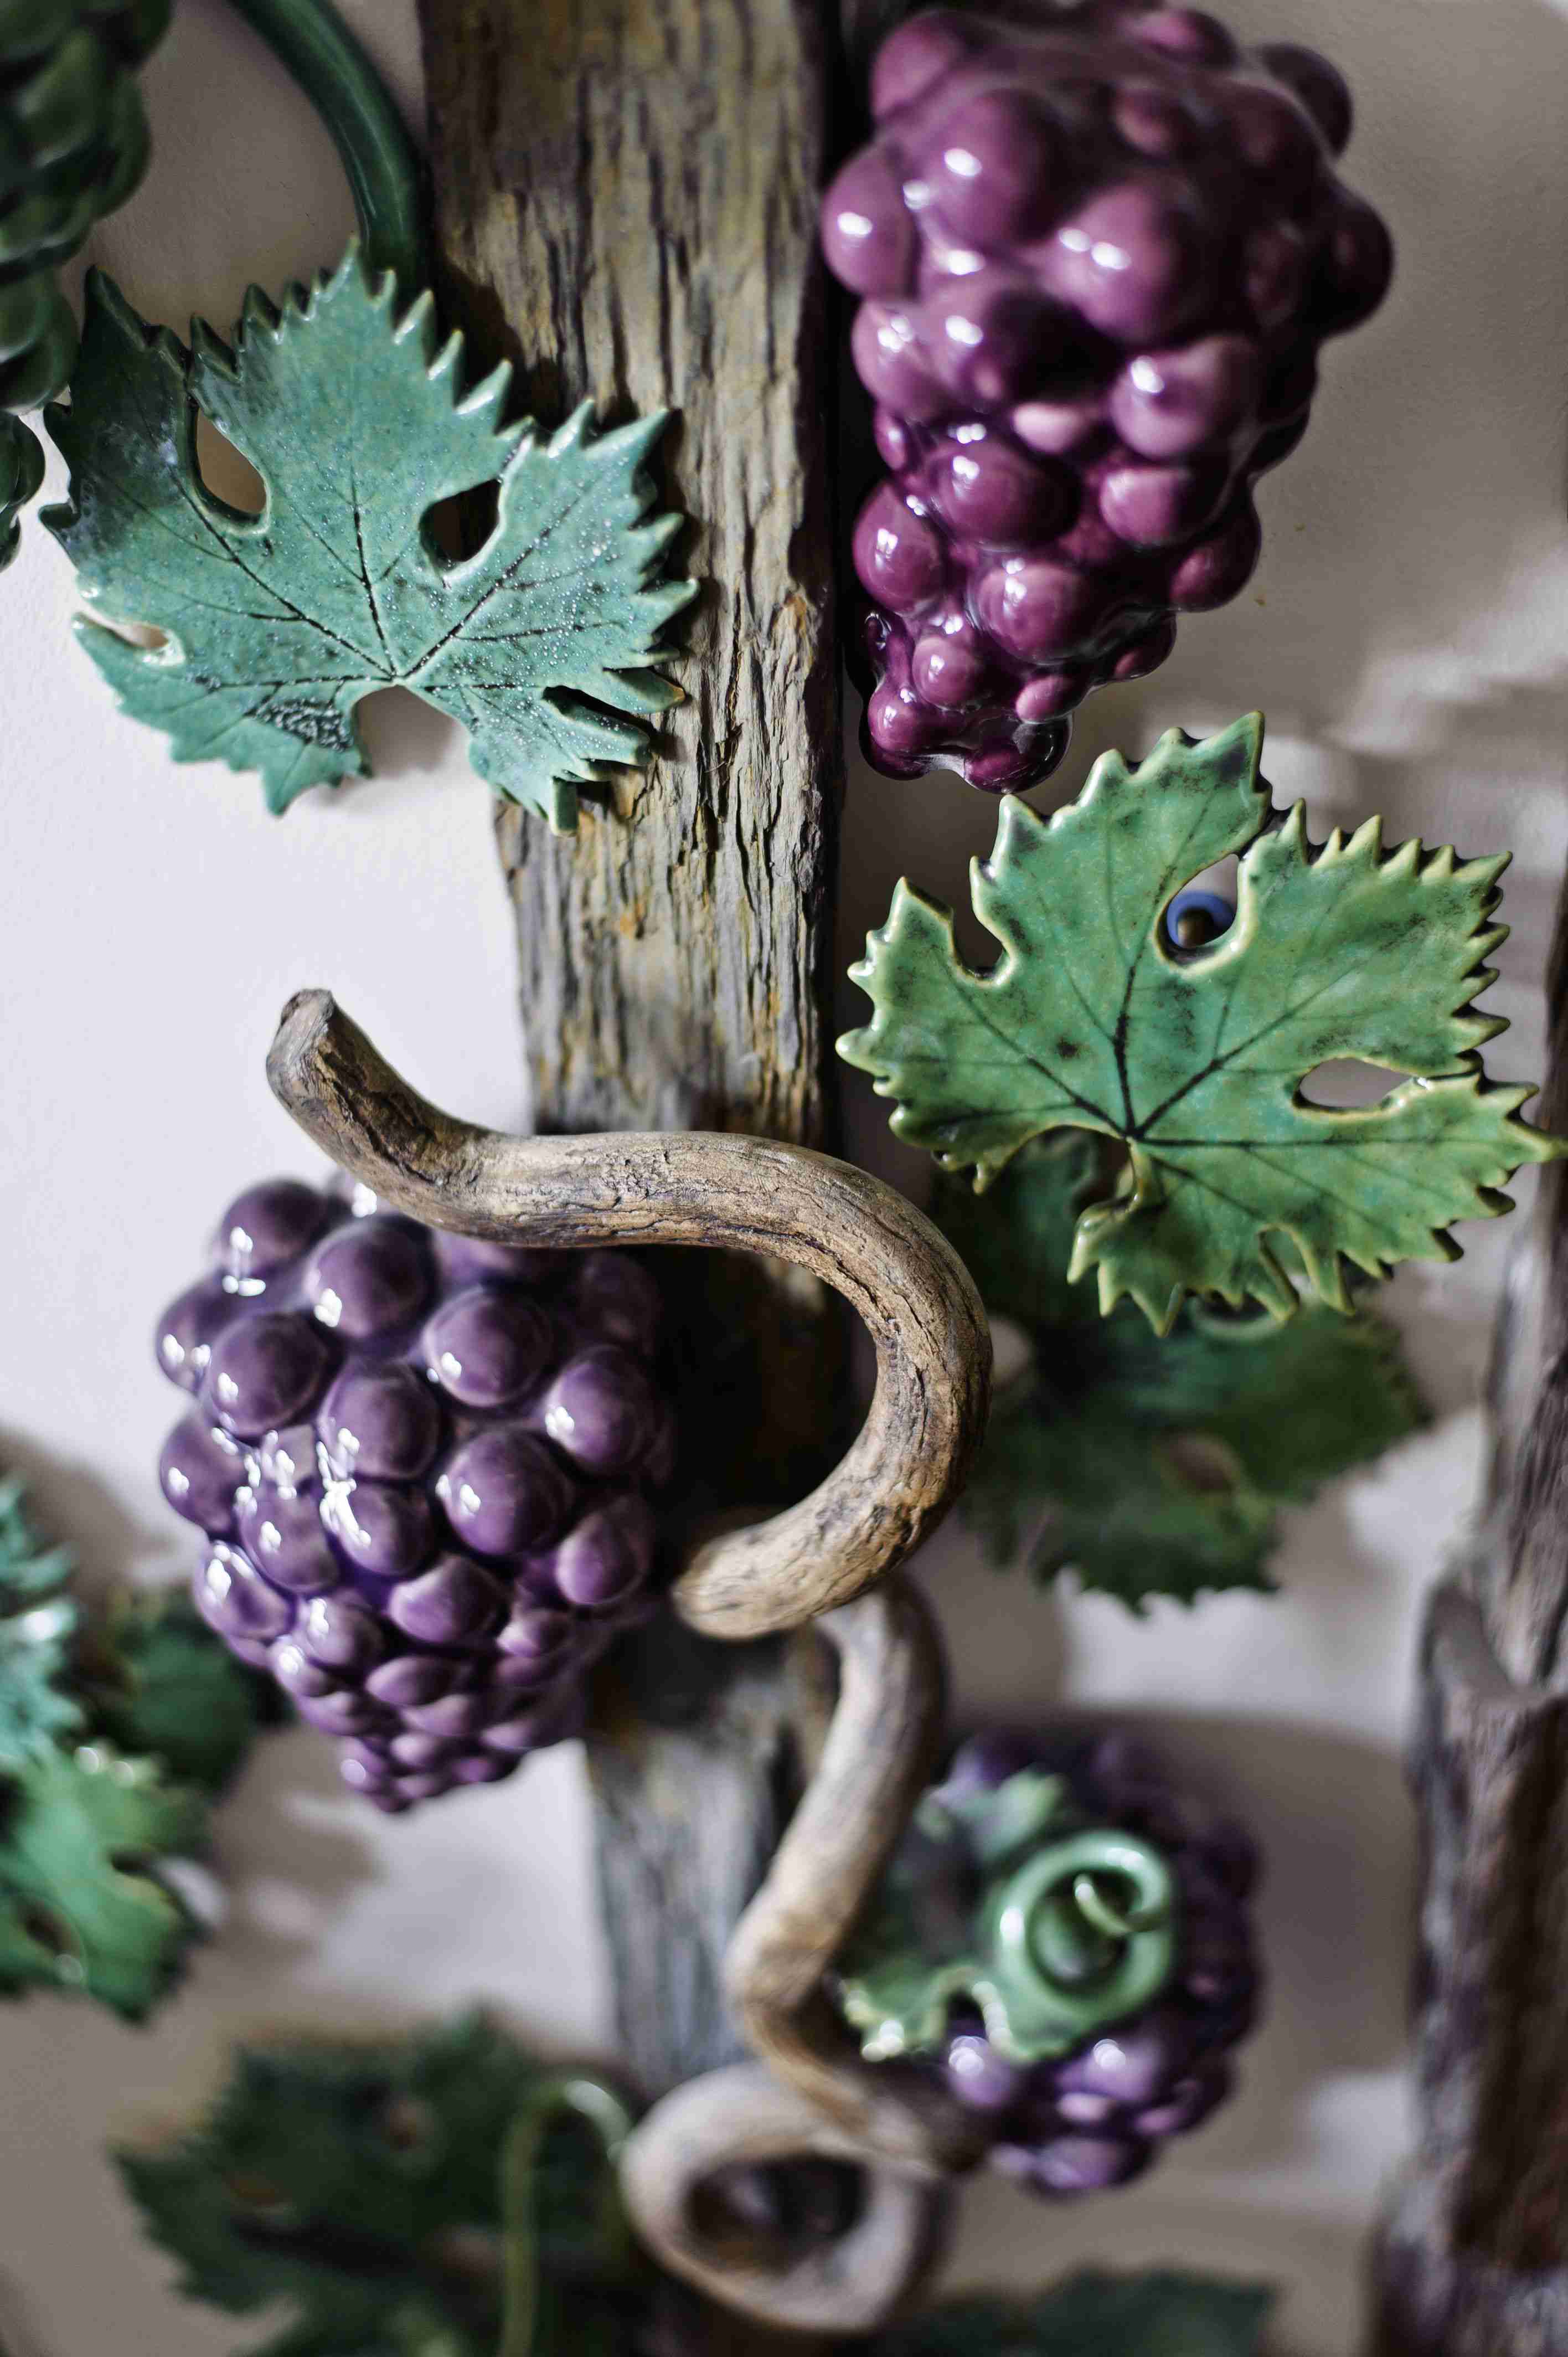 Felfutó kerámiainda szőlőfürtökkel és levelekkel.